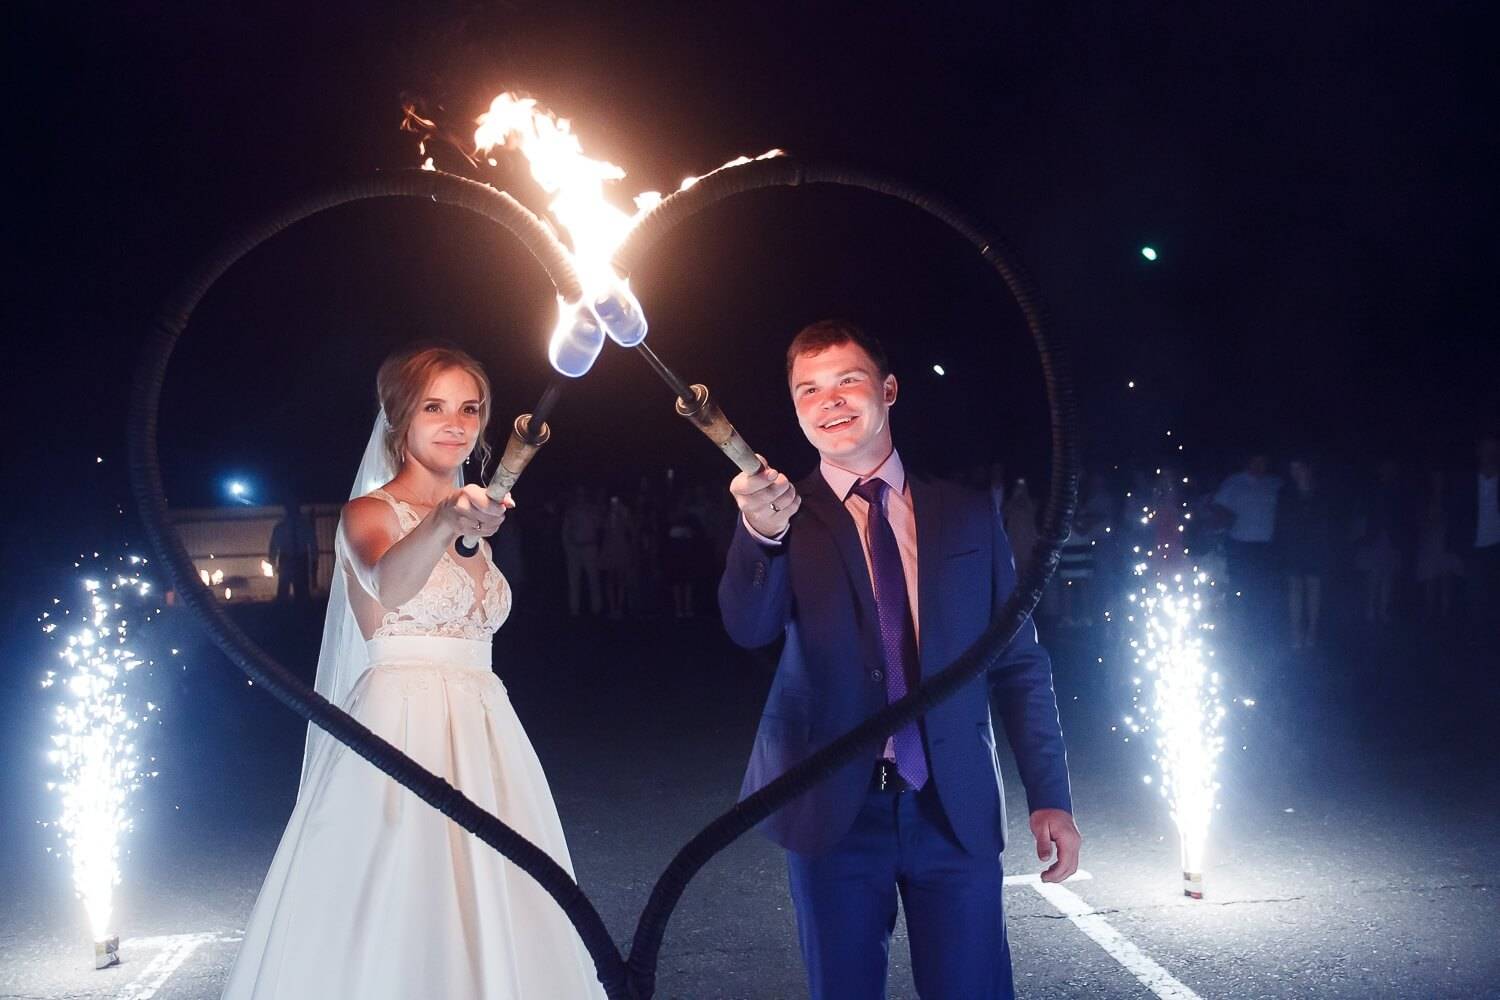 Блистательный перфоманс: чем вас поразит лазерное шоу на свадьбе?